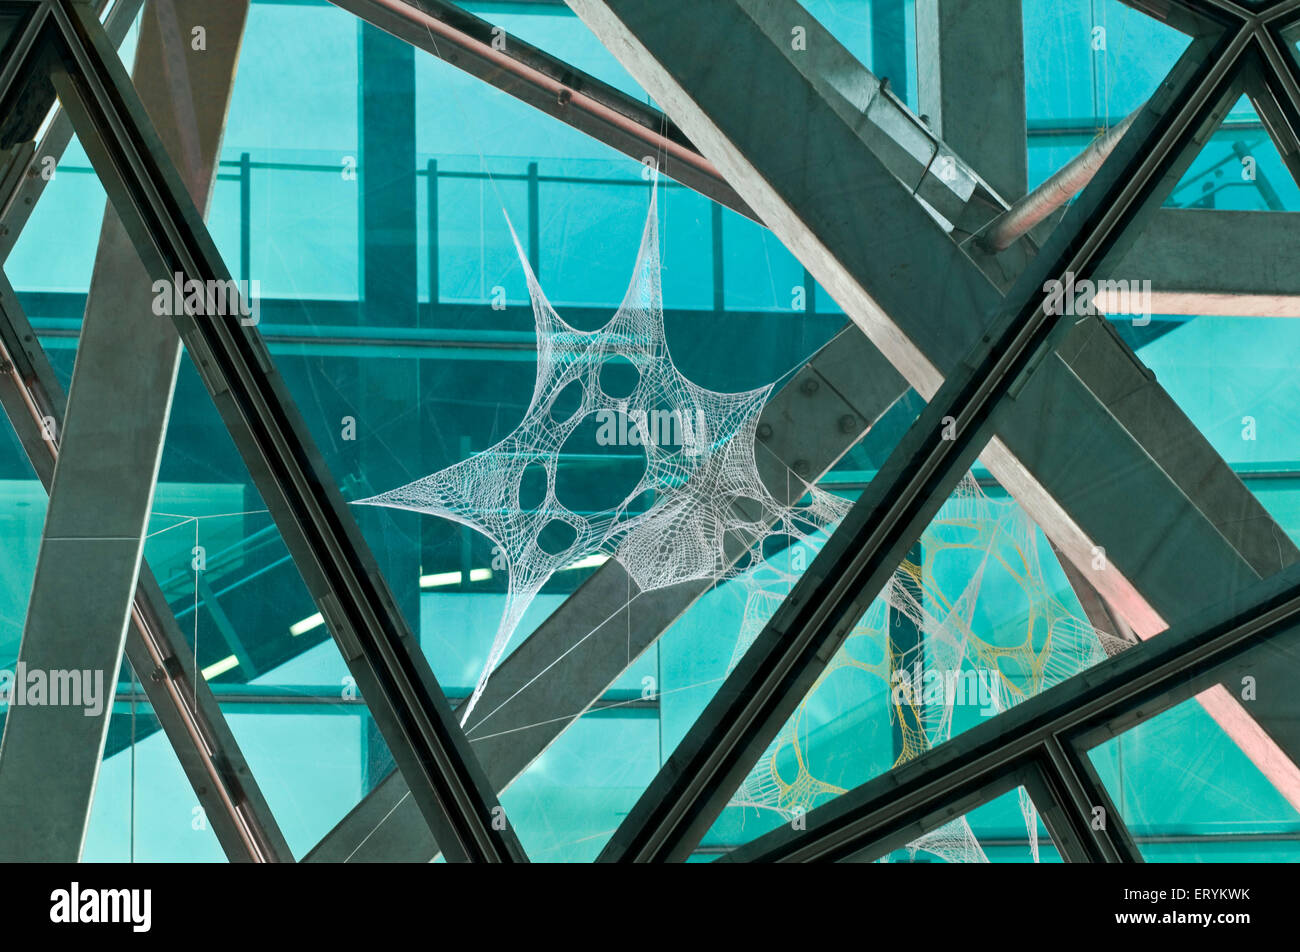 Web installation in glass window design pattern shape architecture form ; Melbourne ; Victoria ; Australia Stock Photo